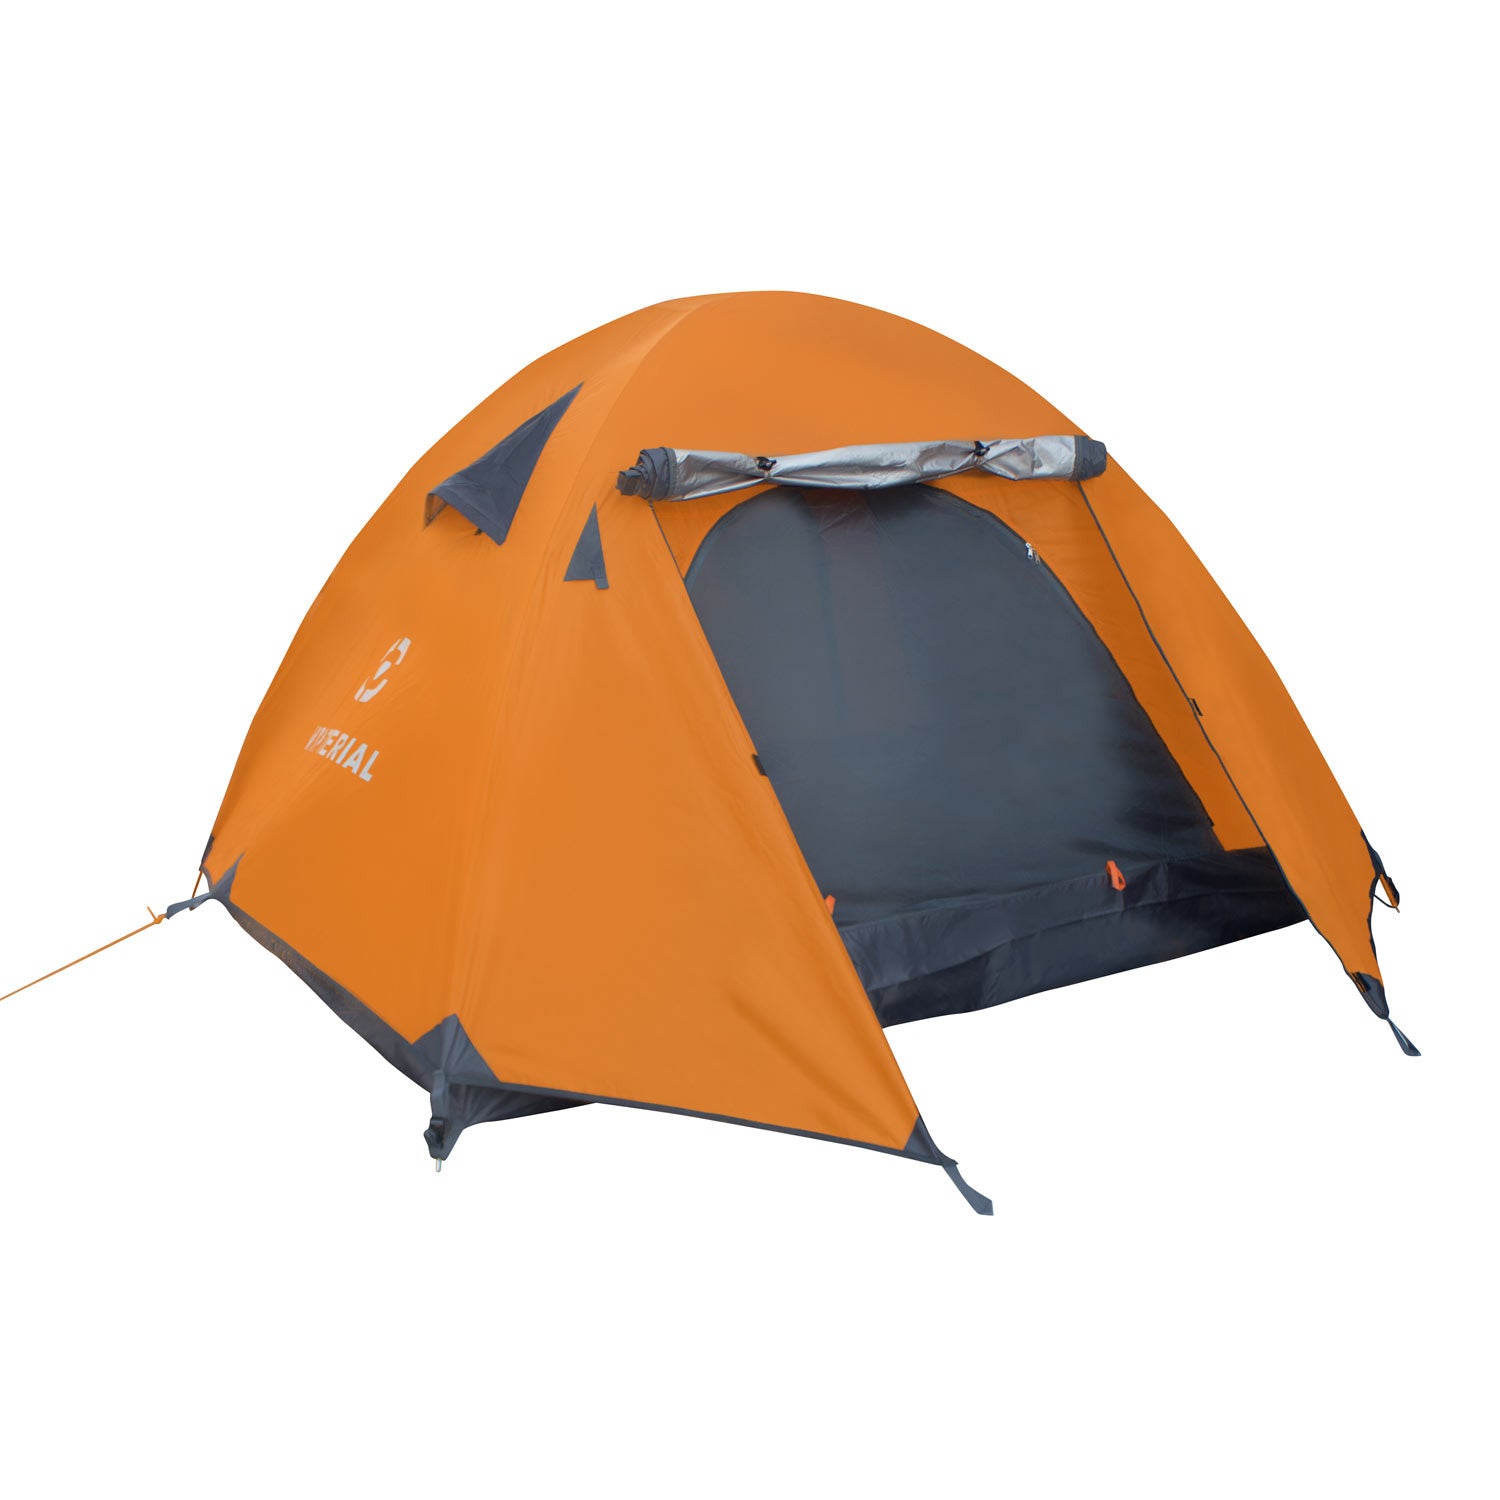 Best Camp палатки. Компактная палатка. Легкая компактная палатка. Палатки для кемпинга. Палатка компакт